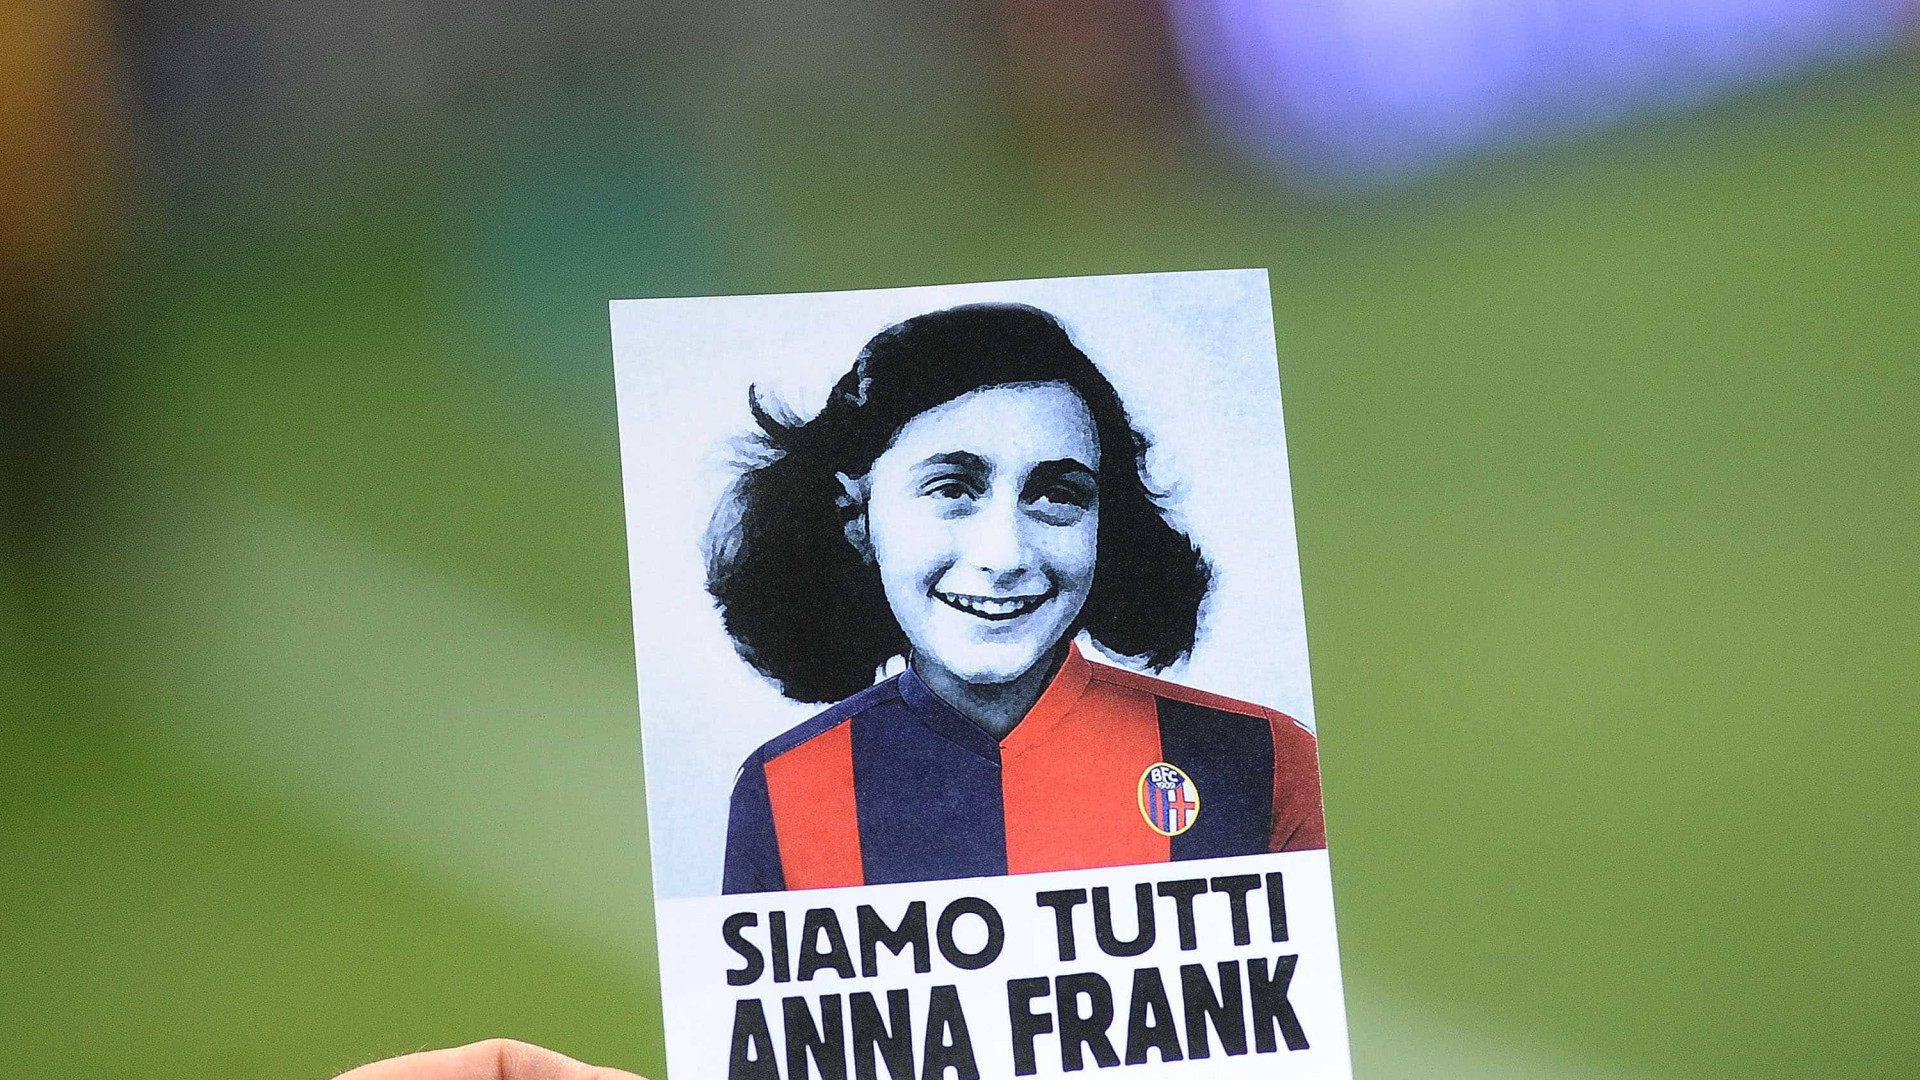 Influenciadora que criticou quadrinhos de Anne Frank vende obra em sua livraria